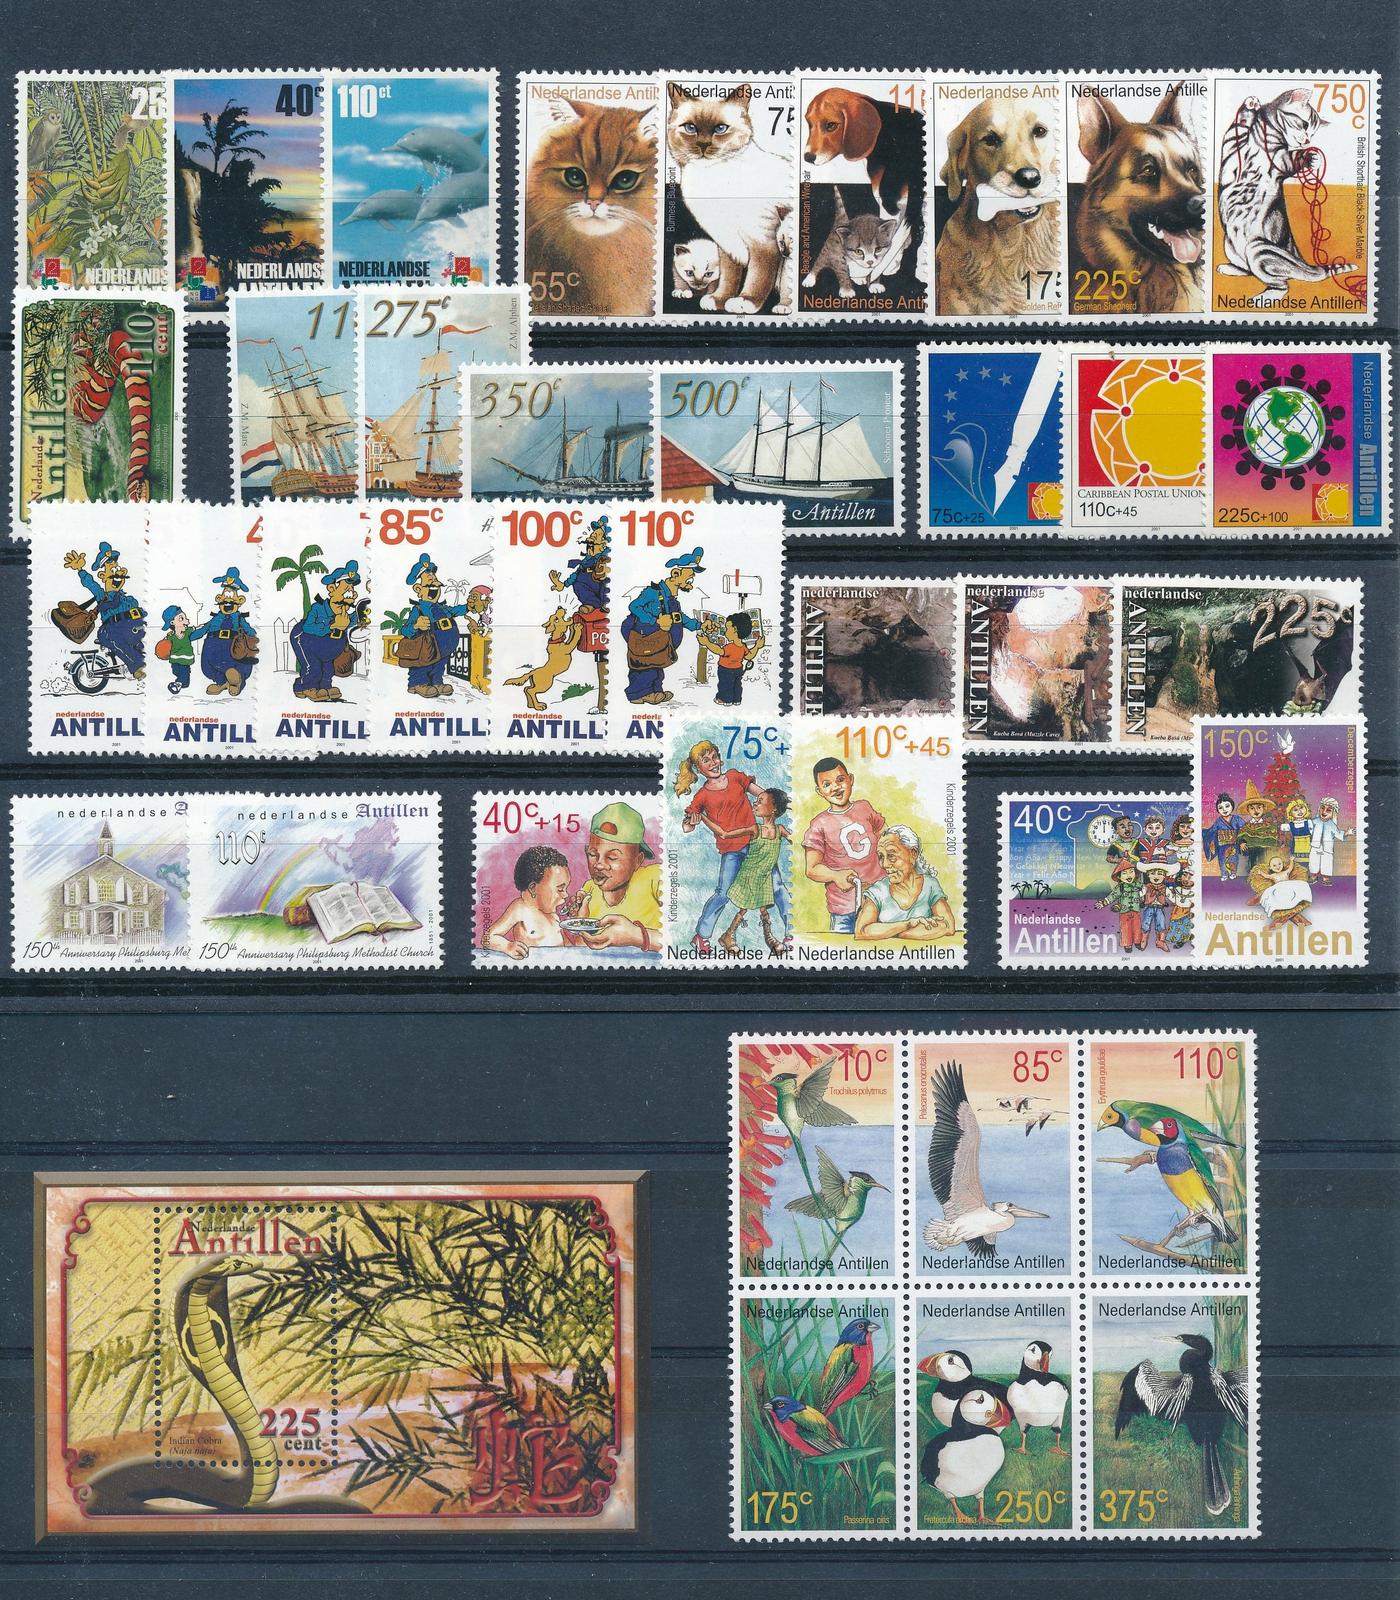 Nederlandse Antillen Netherlands Antilles 2001 Complete Year Set MNH | eBay